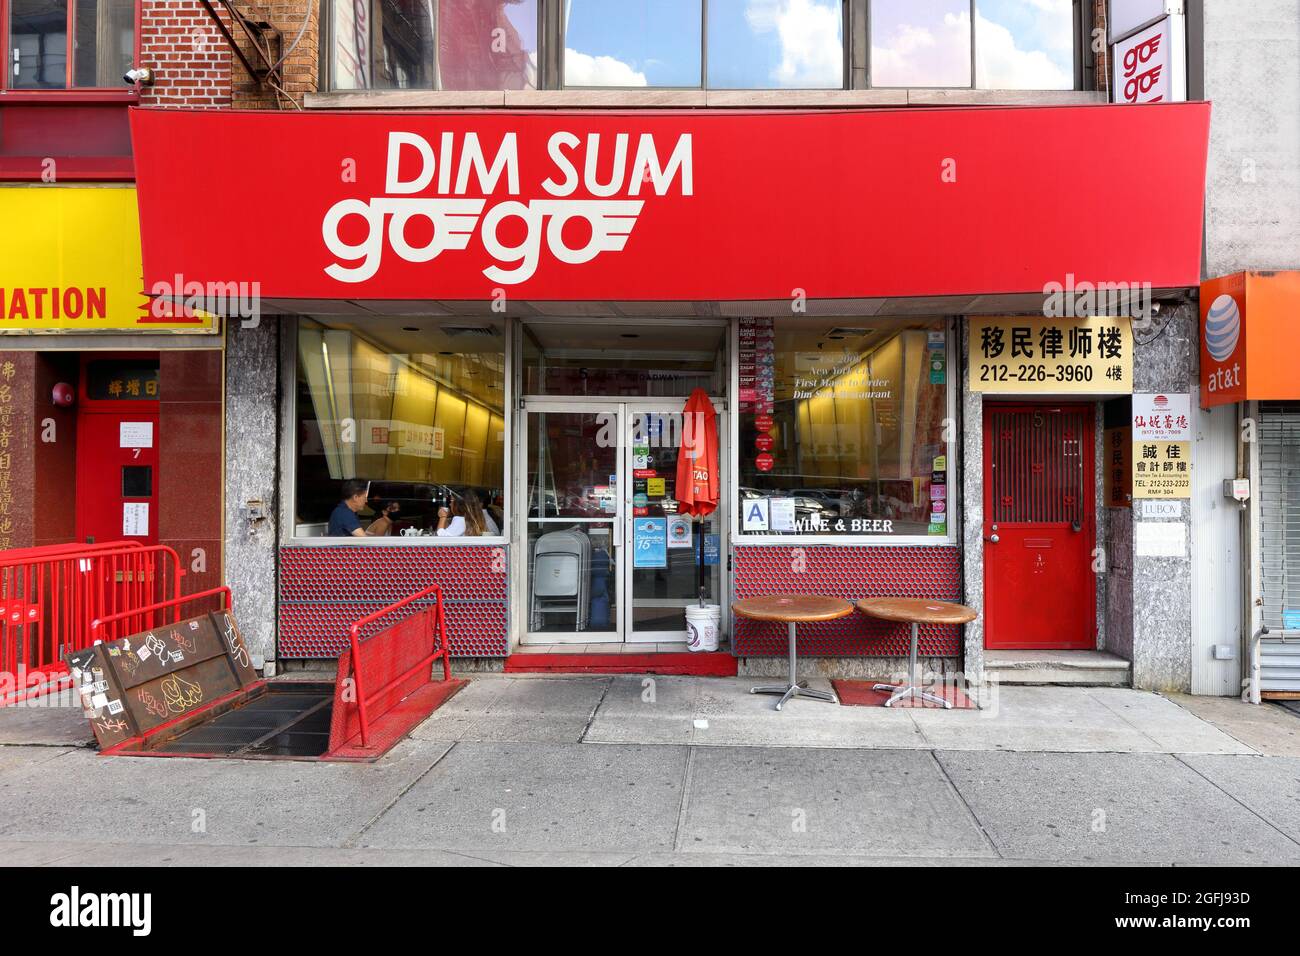 Dim Sum Go Go Go, 5 East Broadway, New York, NYC Foto von einem Dim Sum Restaurant in Manhattan, Chinatown. Stockfoto